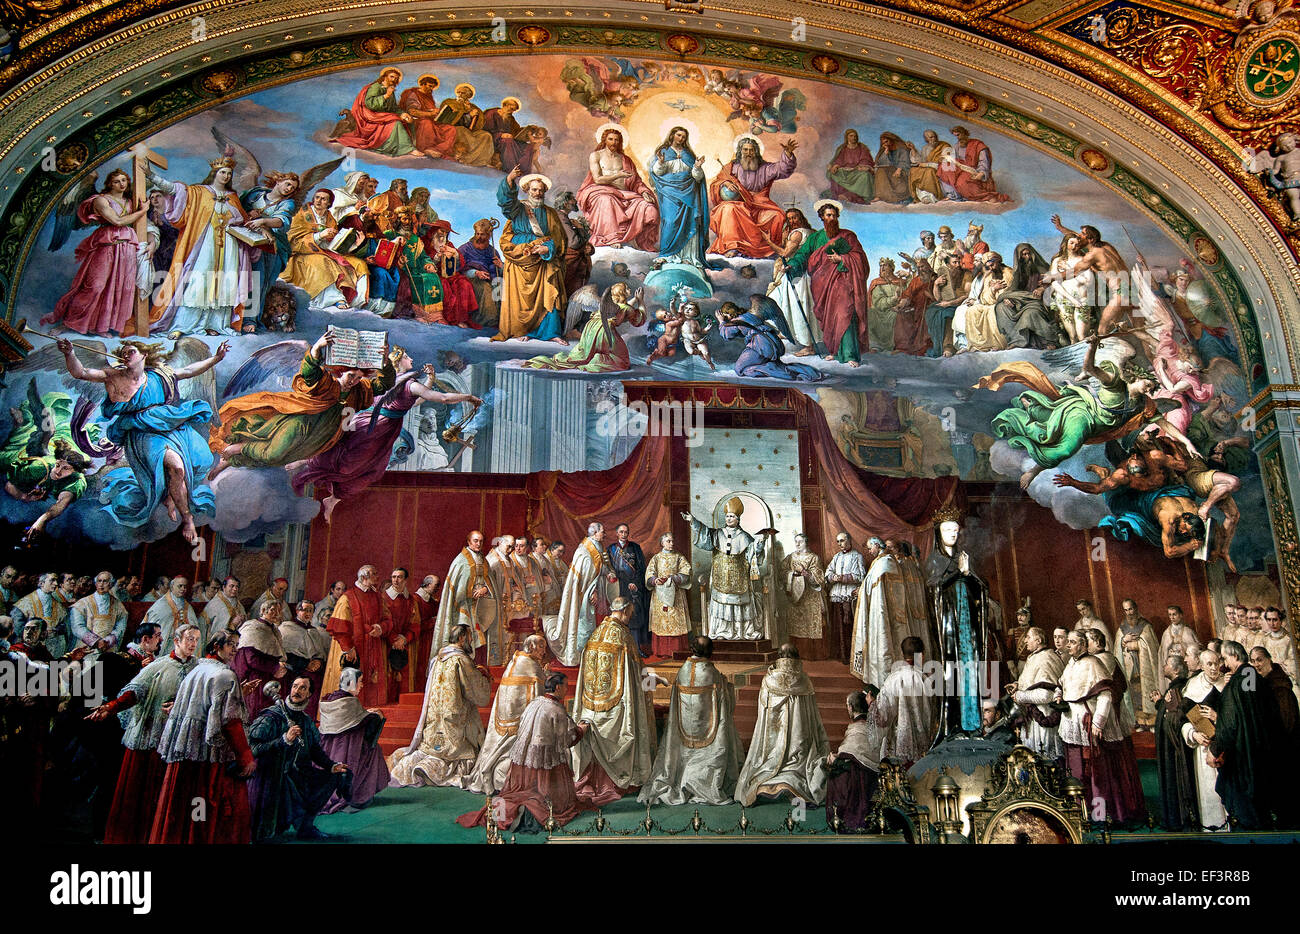 Das Zimmer von der Unbefleckten Empfängnis wurde von Papst Pius IX. nach der Verkündung des Dogmas von der Unbefleckten Empfängnis 1854 Maler Francesco Podesti 1800 – 1895 päpstlichen Gemächer Vatikan Rom Italien Fresko beauftragt. Stockfoto